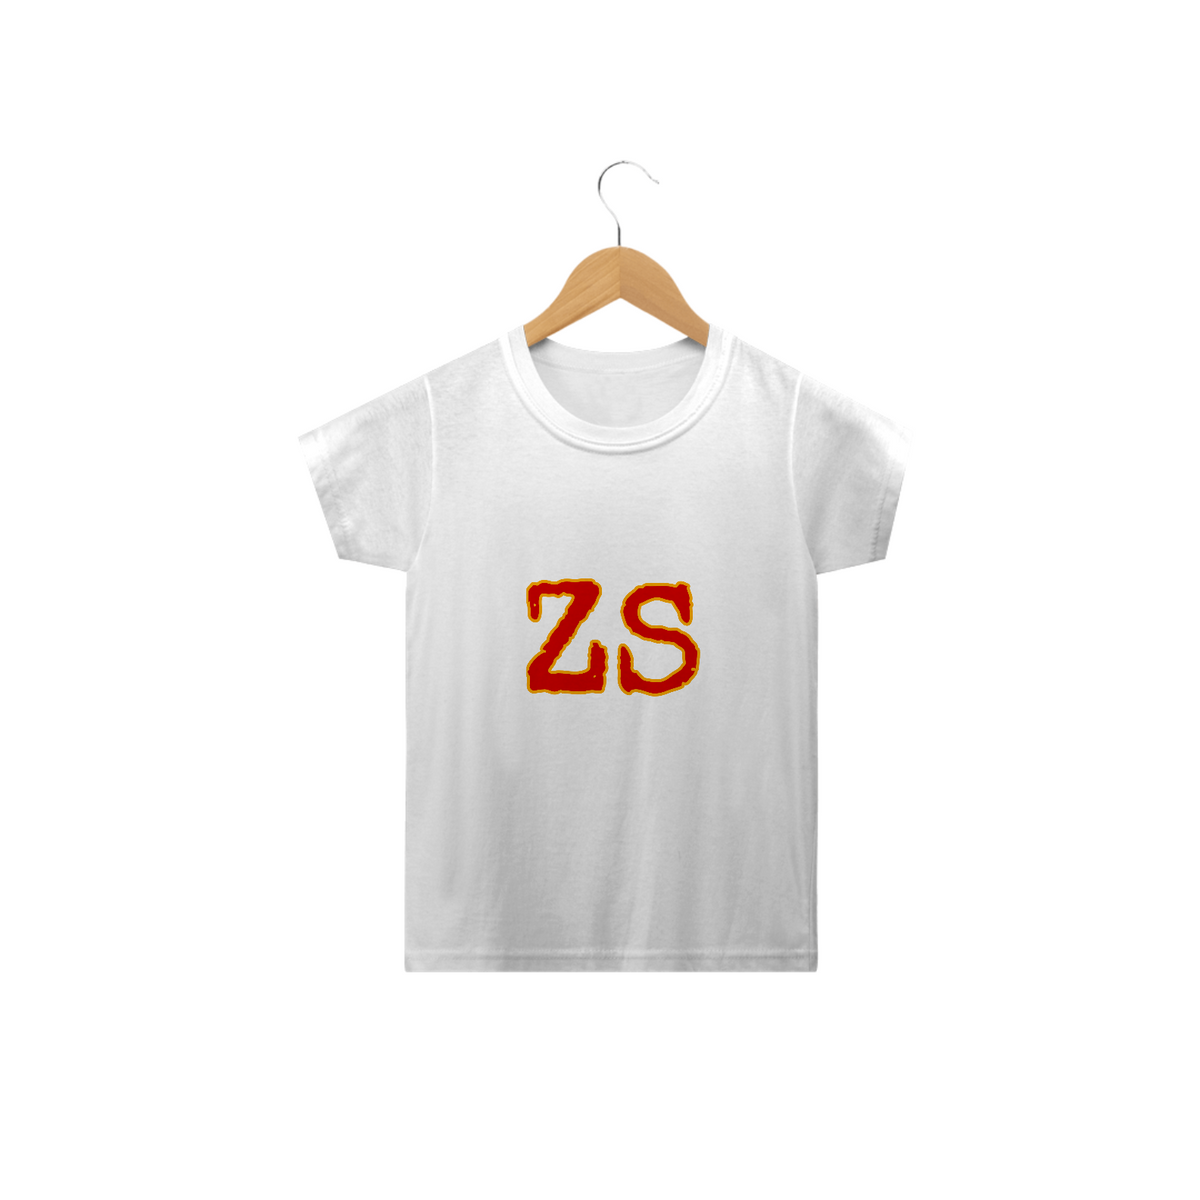 Nome do produto: Camisa zs 